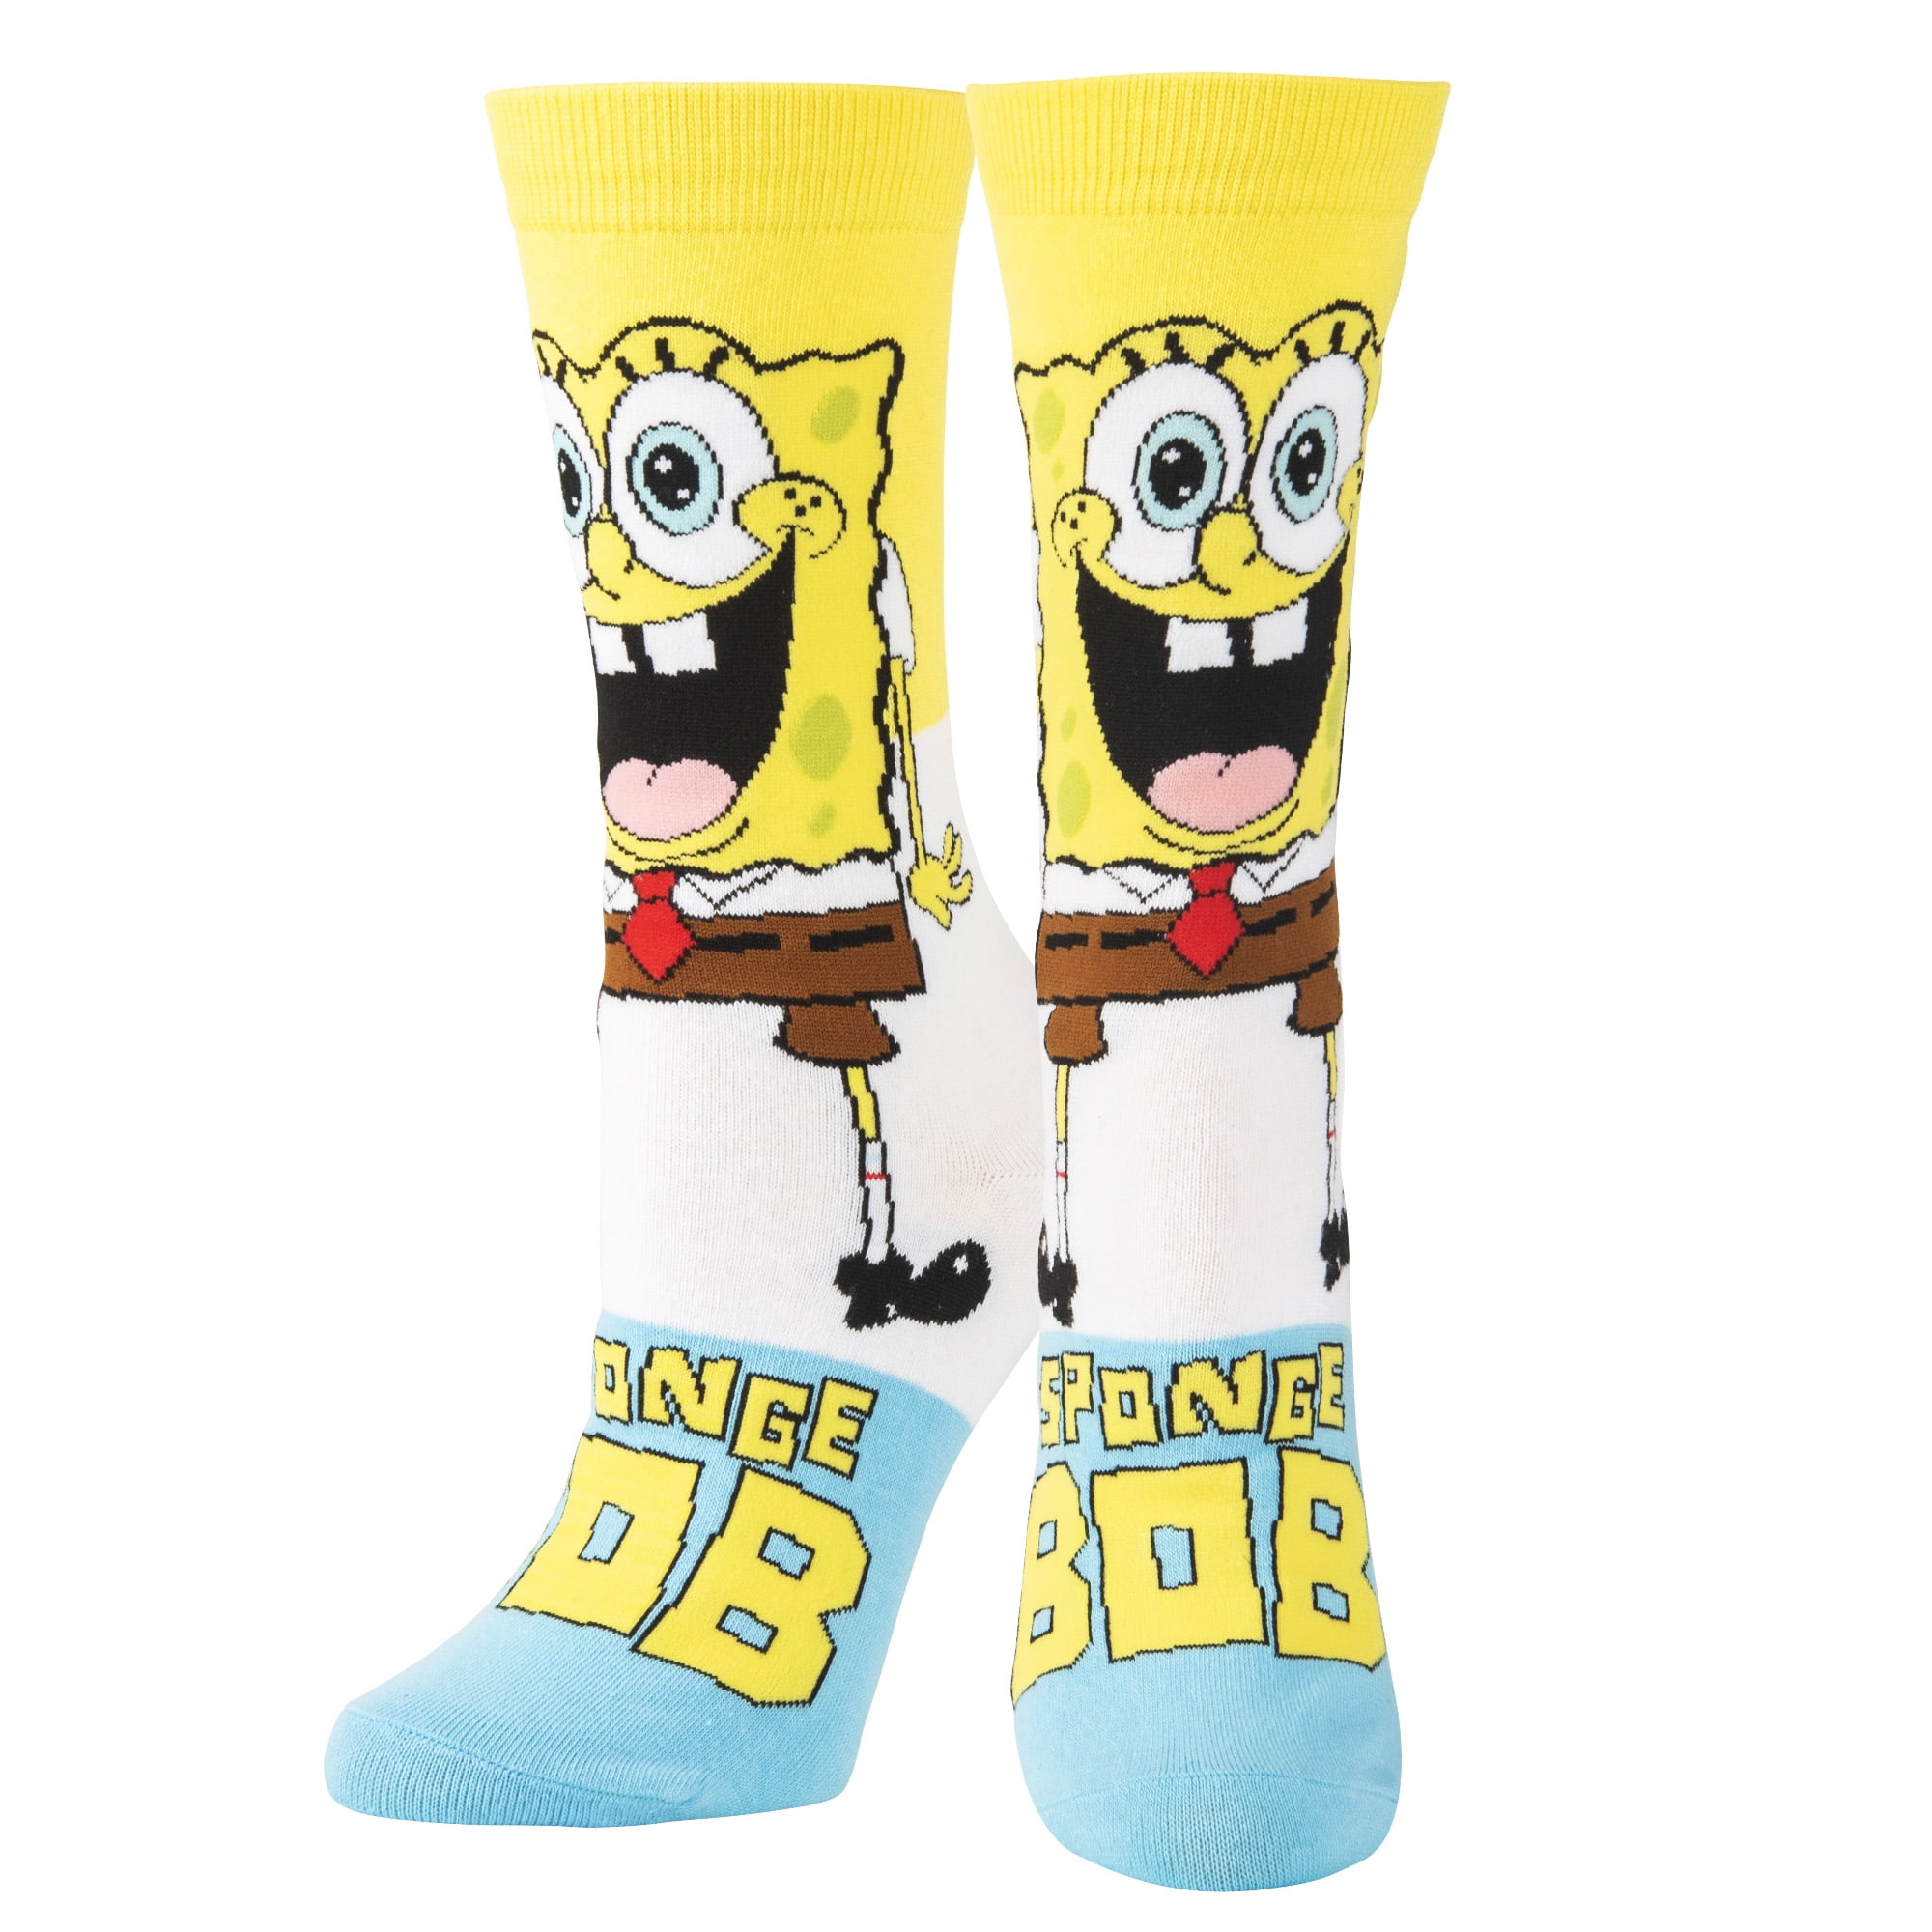 Immigratie Sturen kleermaker Odd Sox, Smilepants Nickelodeon SpongeBob Cartoon, Fun Cute Socks for  Women, 5-10 - Walmart.com